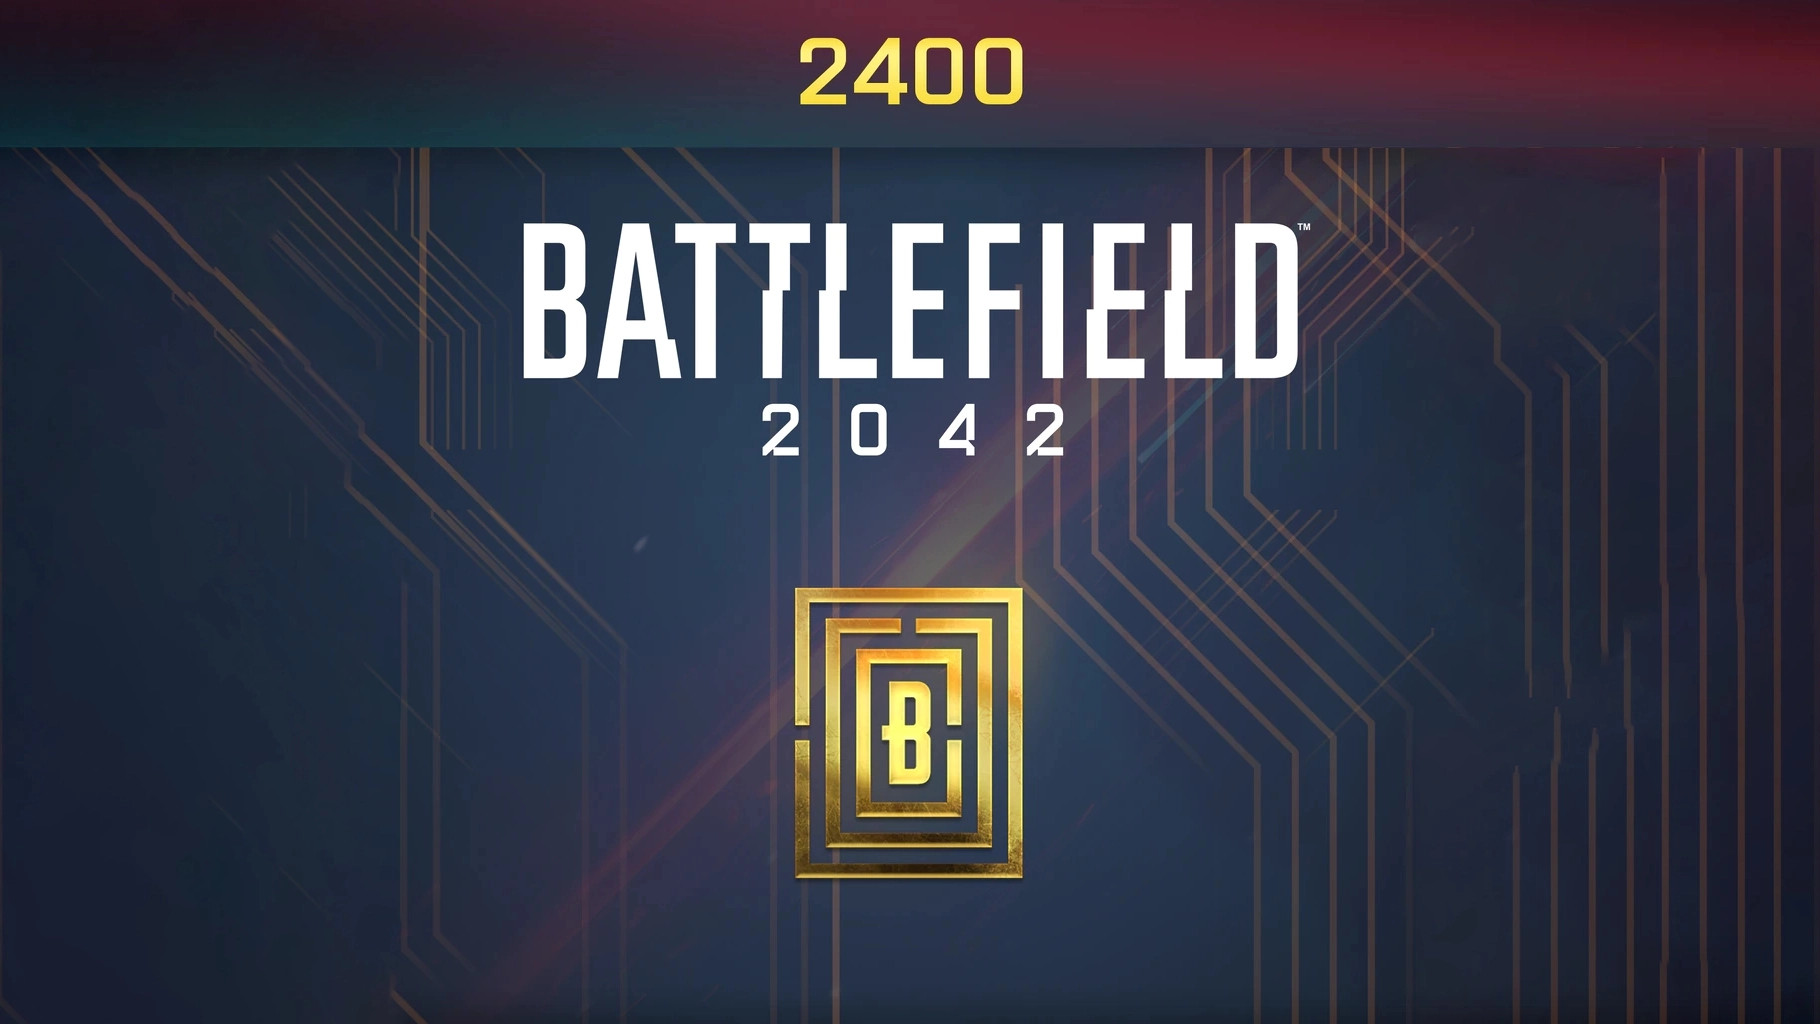 Battlefield 2042 - 2400 BFC Balance XBOX One / Xbox Series X,S CD Key